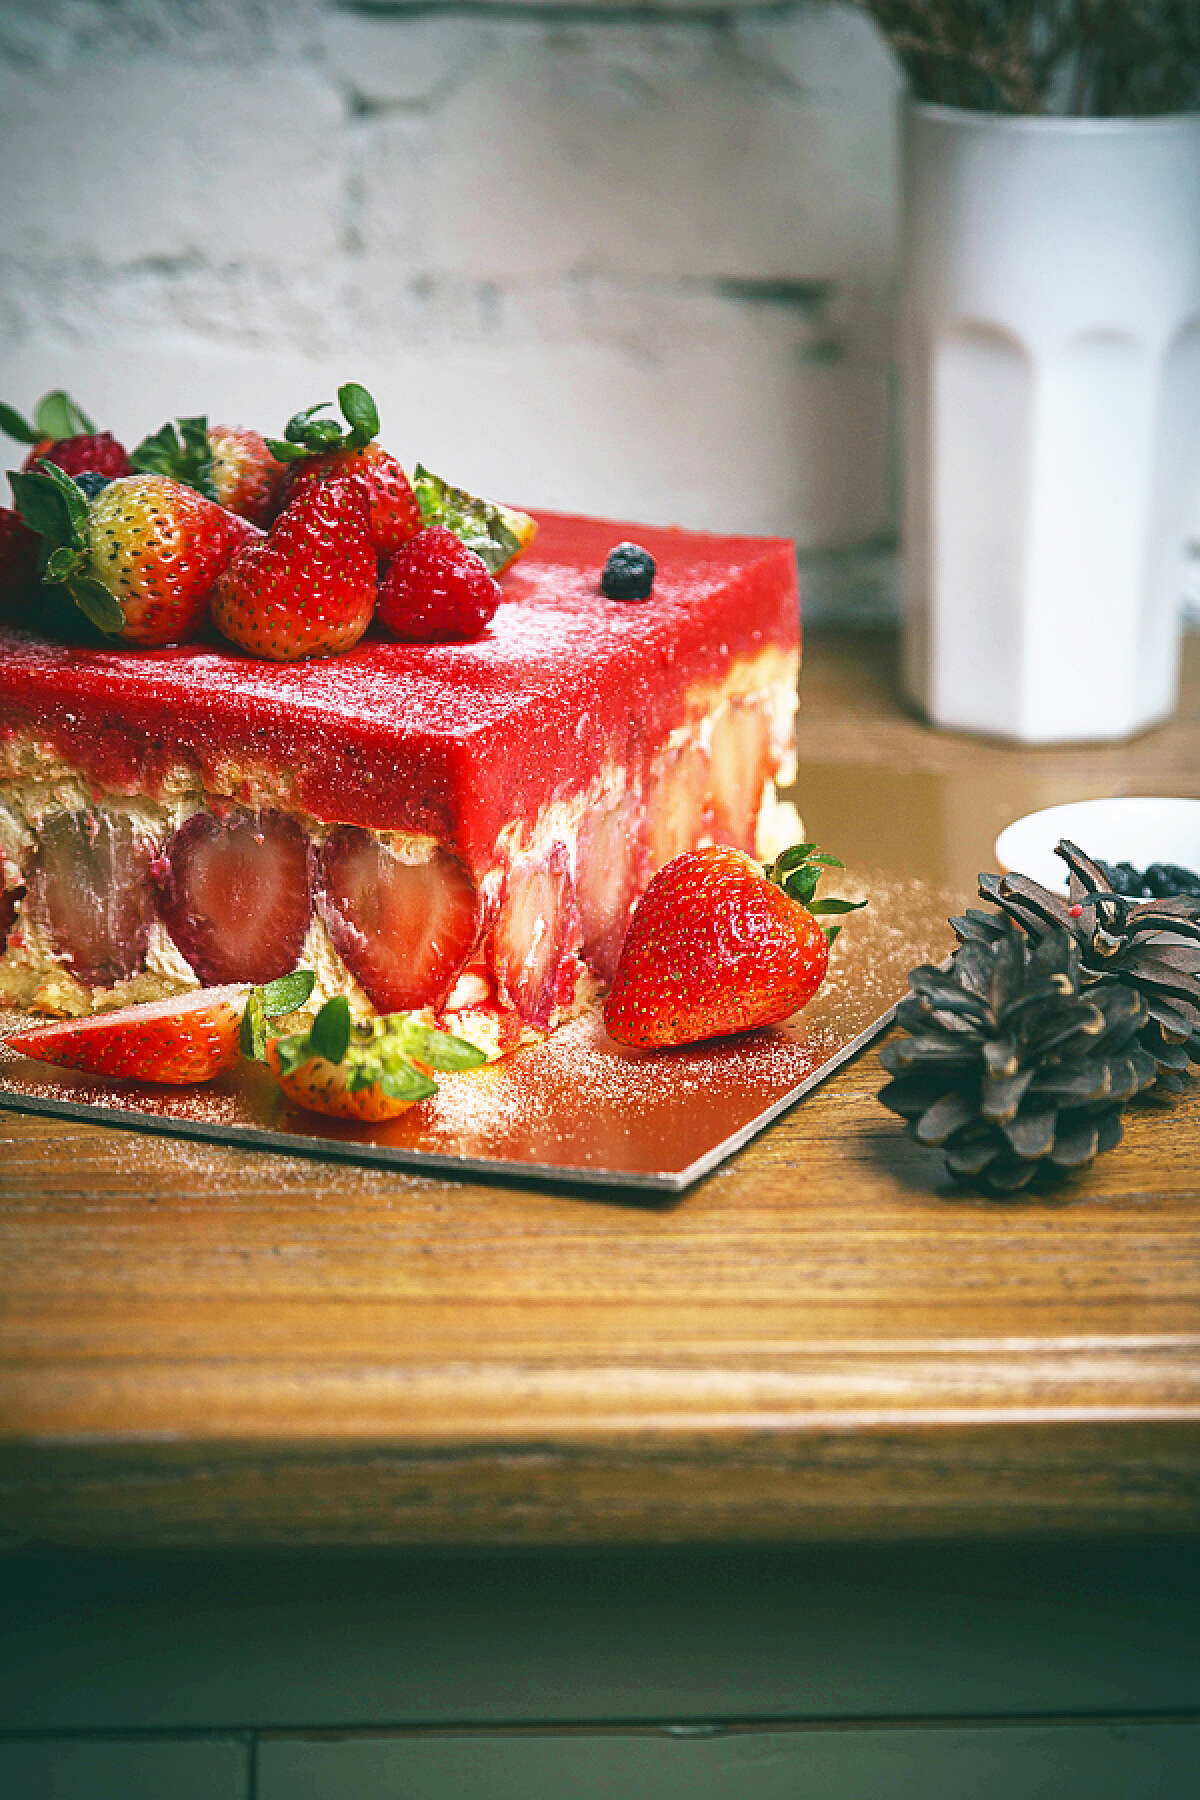 草莓奶油蛋糕的做法_【图解】草莓奶油蛋糕怎么做如何做好吃_草莓奶油蛋糕家常做法大全_睡宝宝_豆果美食